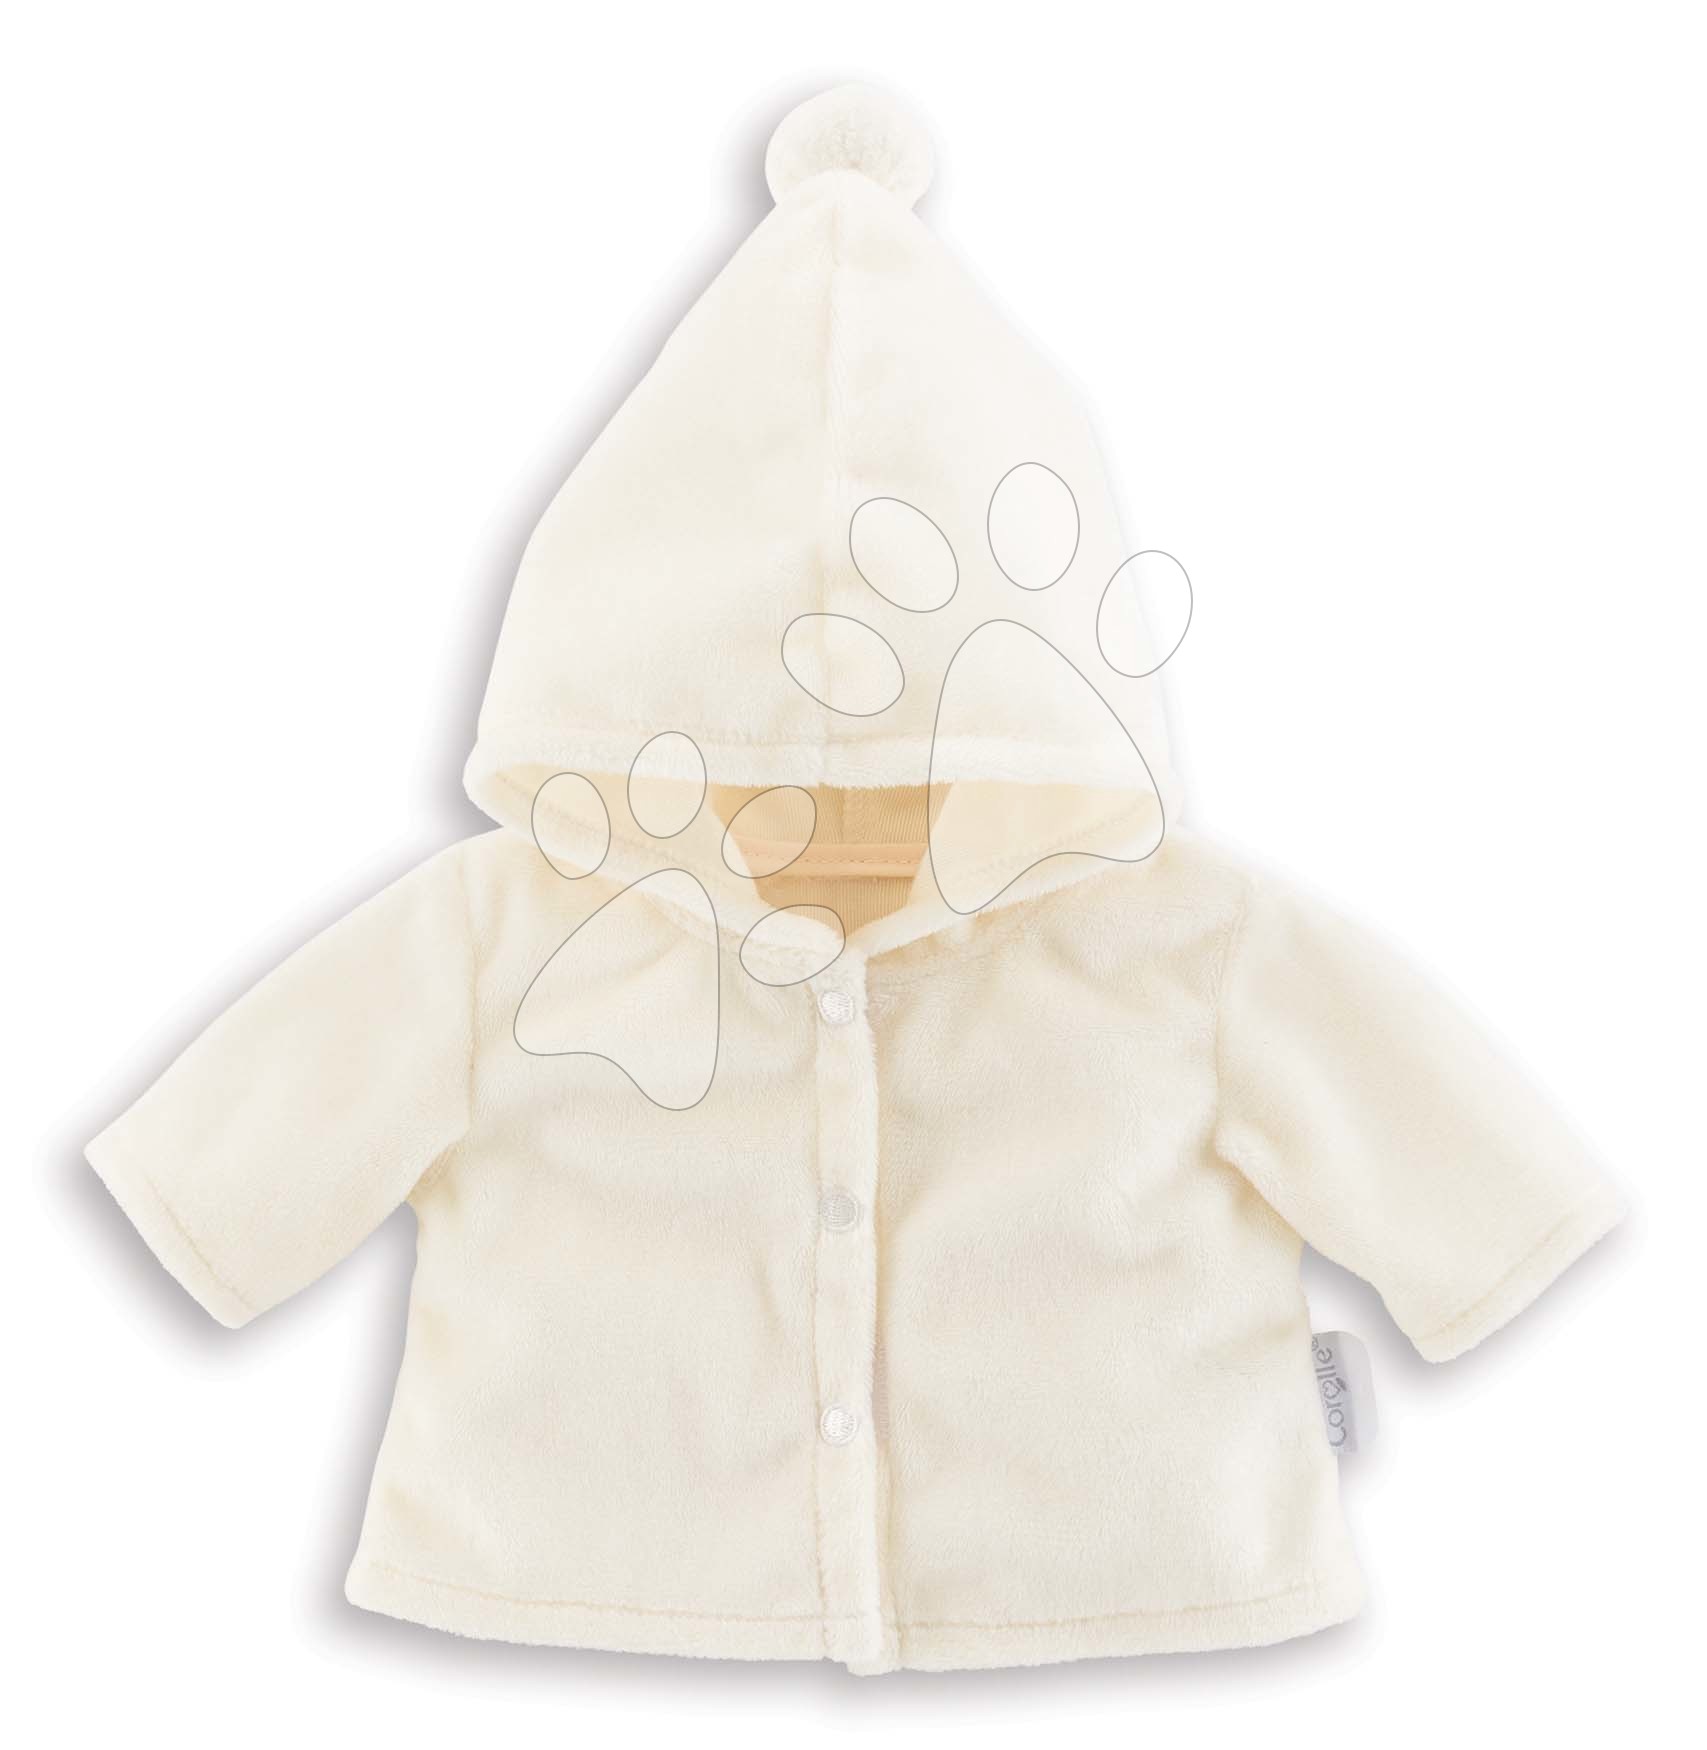 Oblačila za punčke - Oblačilo Coat Starlit Night Mon Premier Poupon Corolle za 30 cm dojenčka od 18 mes